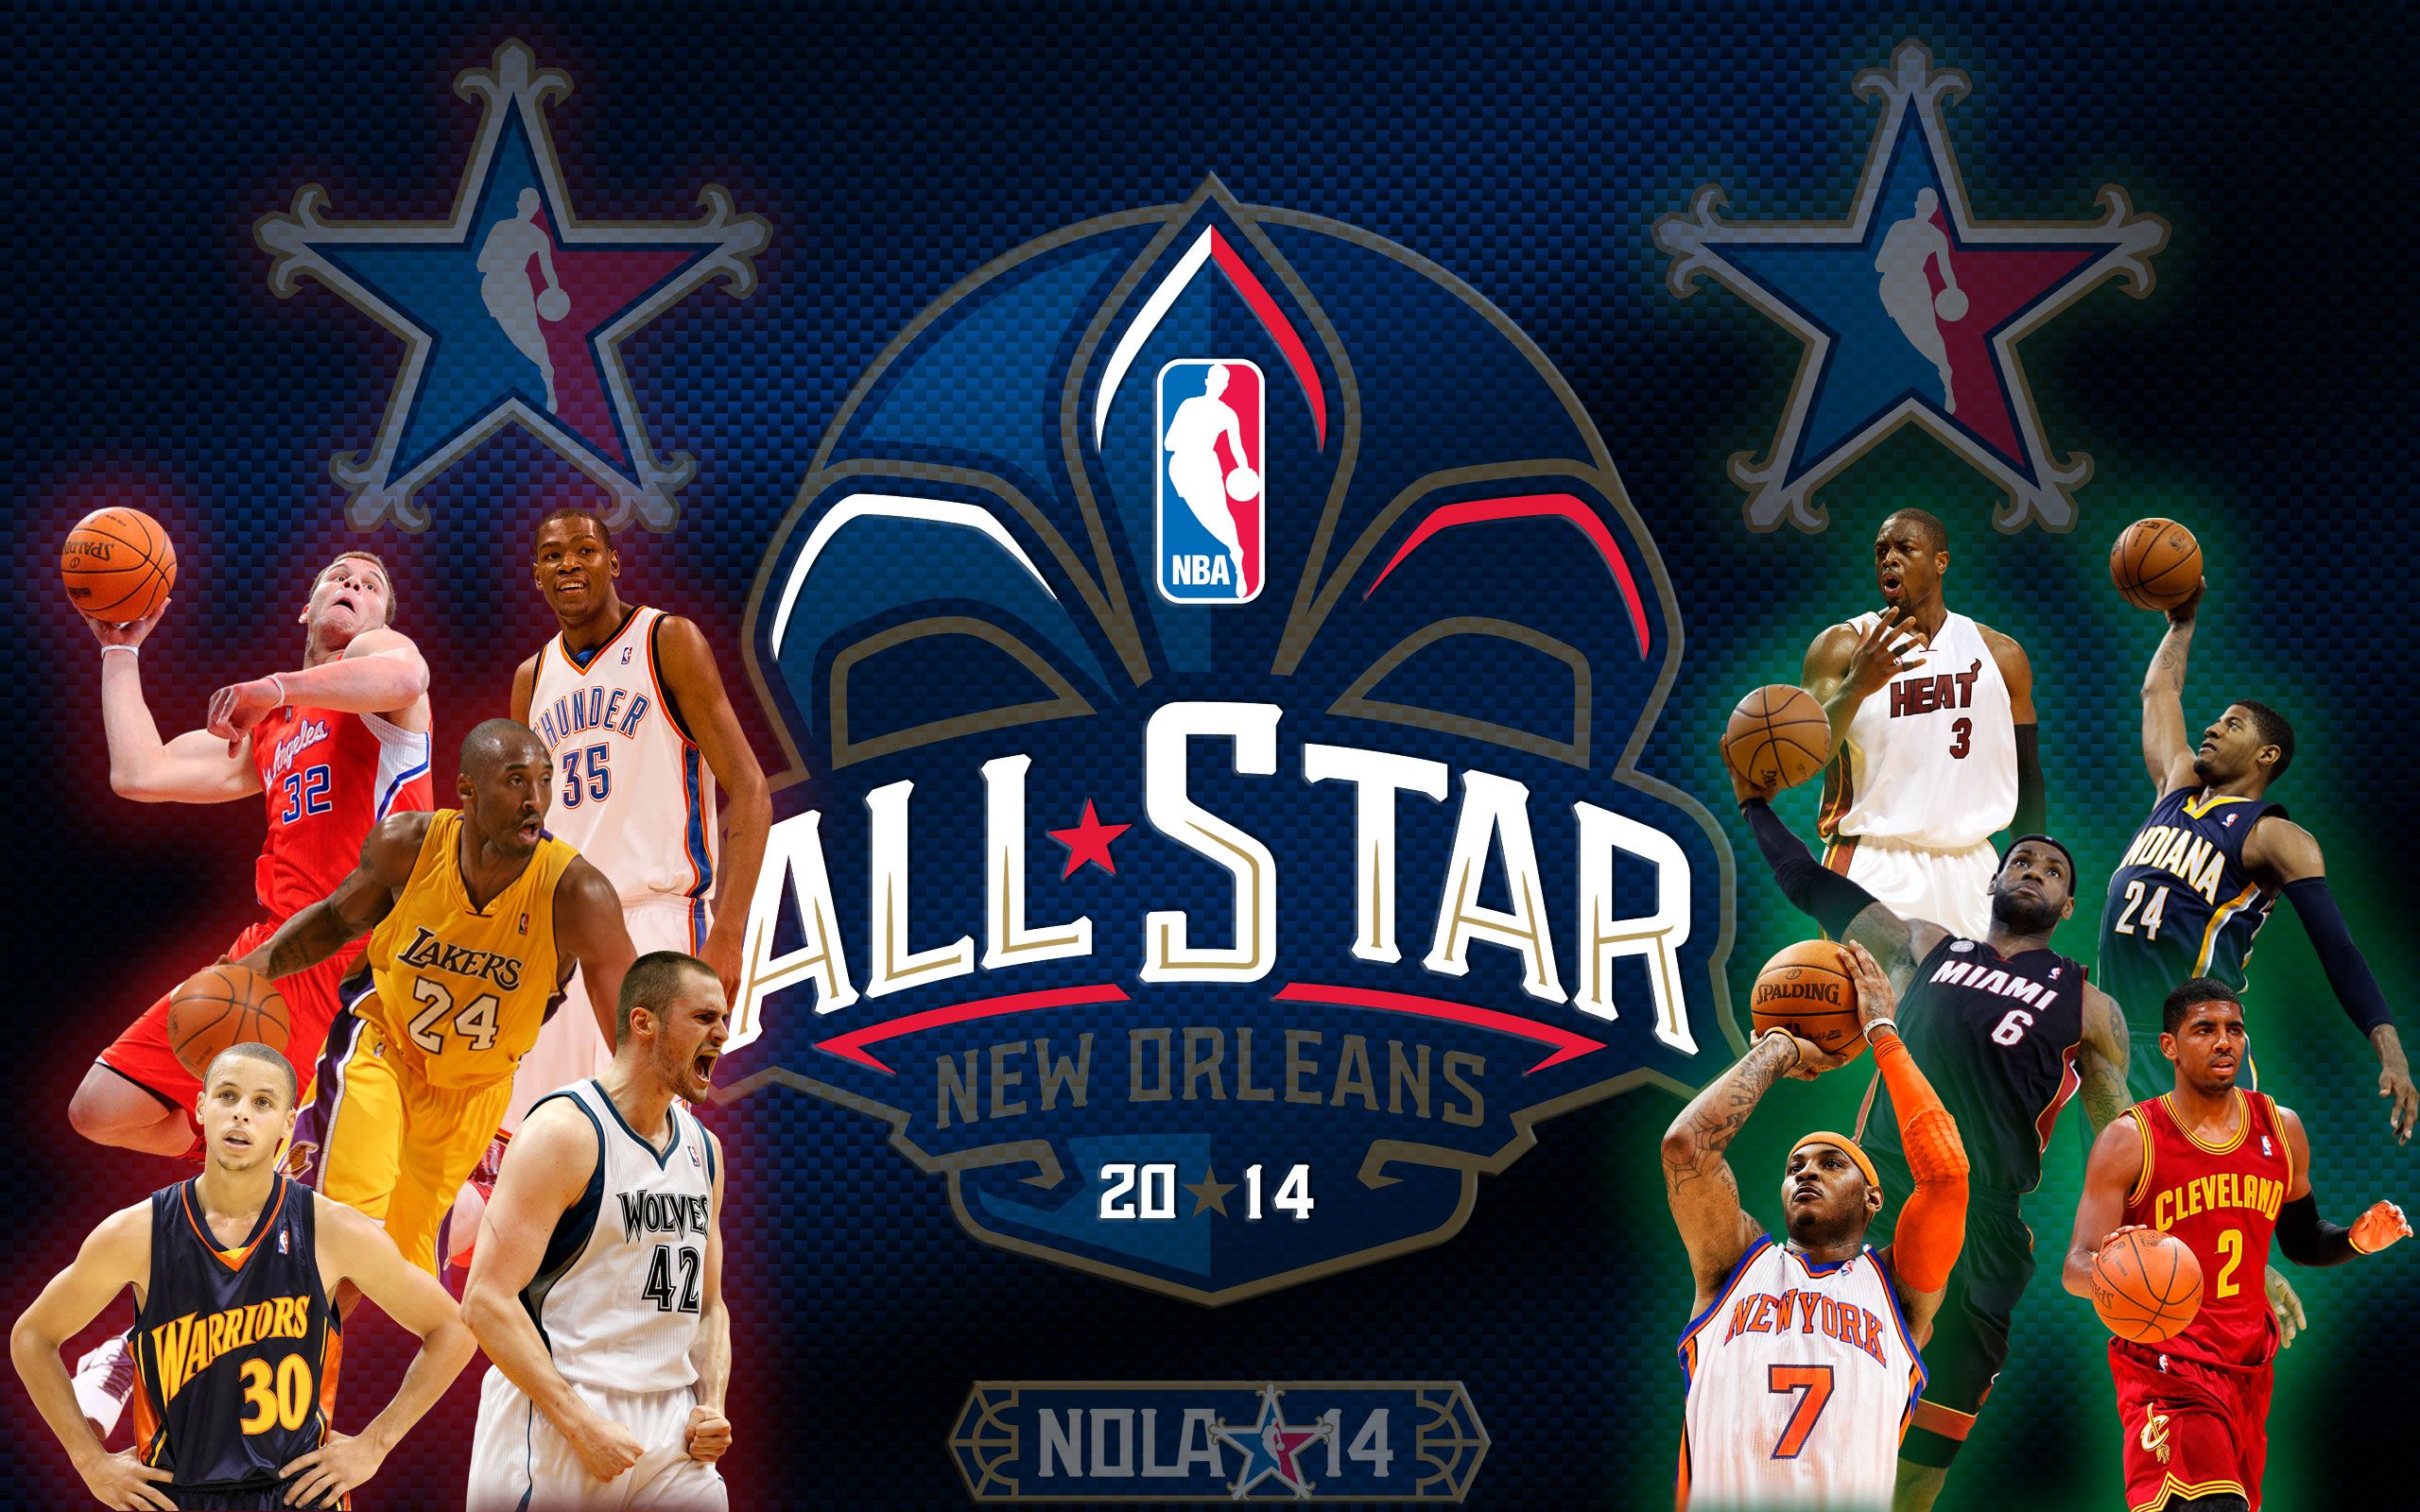 Nba Allstar Wallpaper. Sick NBA Wallpaper, NBA Cartoon Wallpaper and NBA Wallpaper